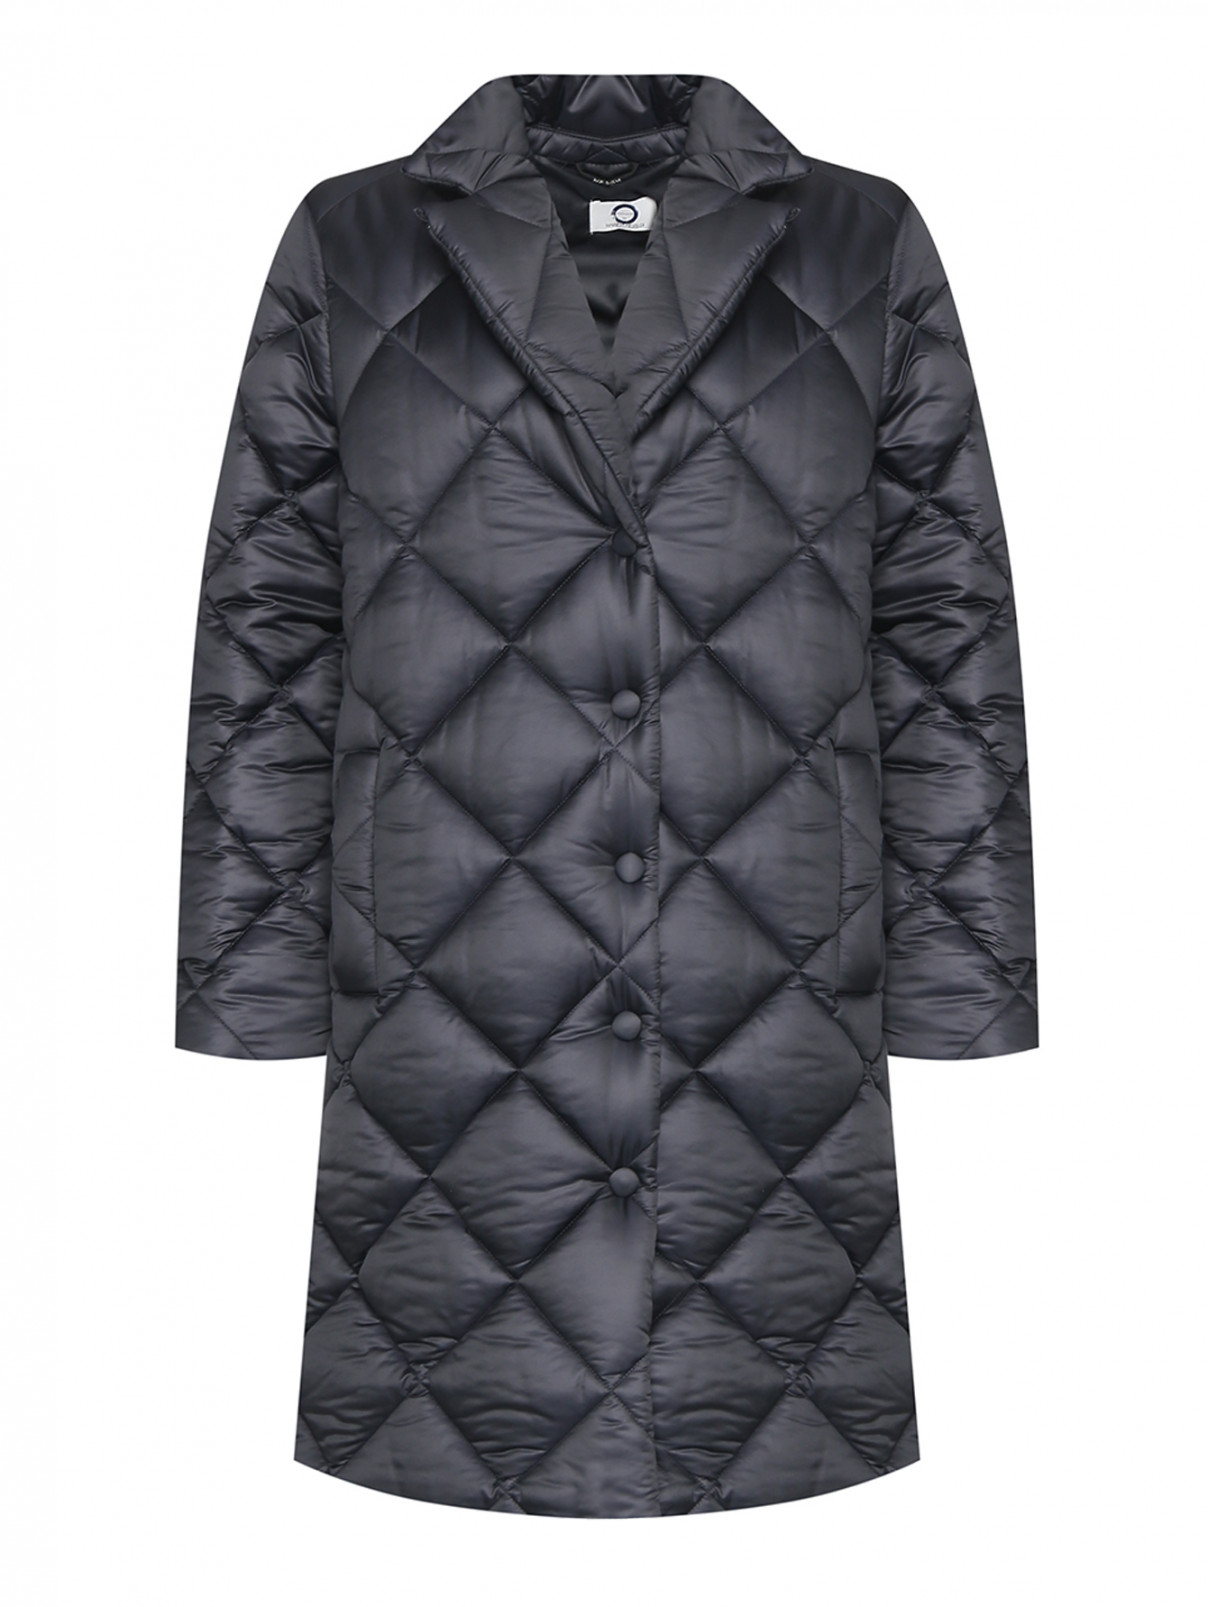 Удлиненная стеганая куртка Marina Rinaldi  –  Общий вид  – Цвет:  Черный